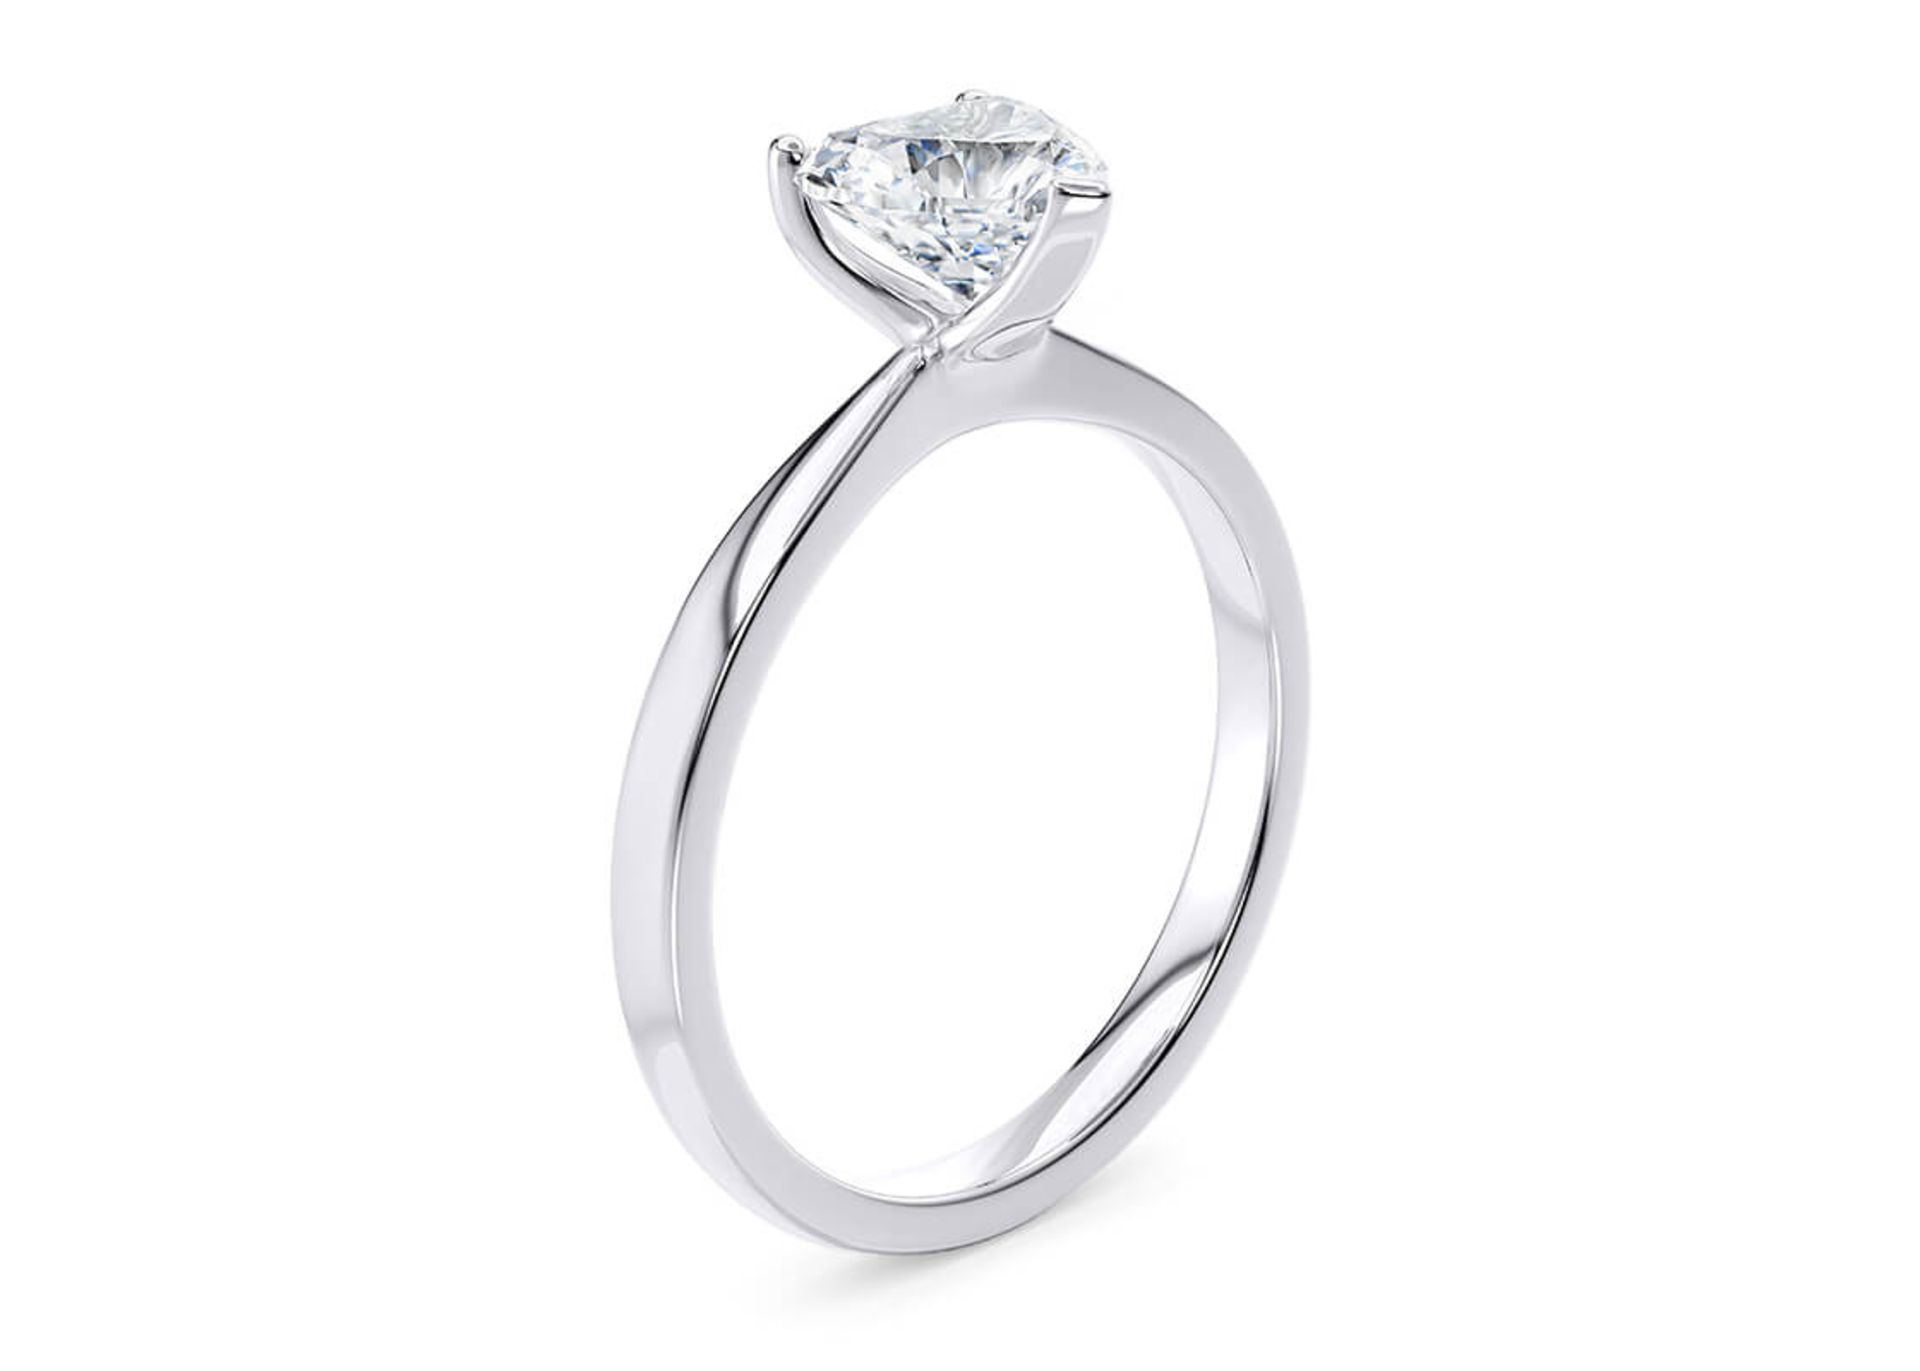 ** ON SALE ** Heart Cut Diamond Platinum Ring 4.00 Carat F Colour VS2 Clarity EX EX - IGI - Image 3 of 4